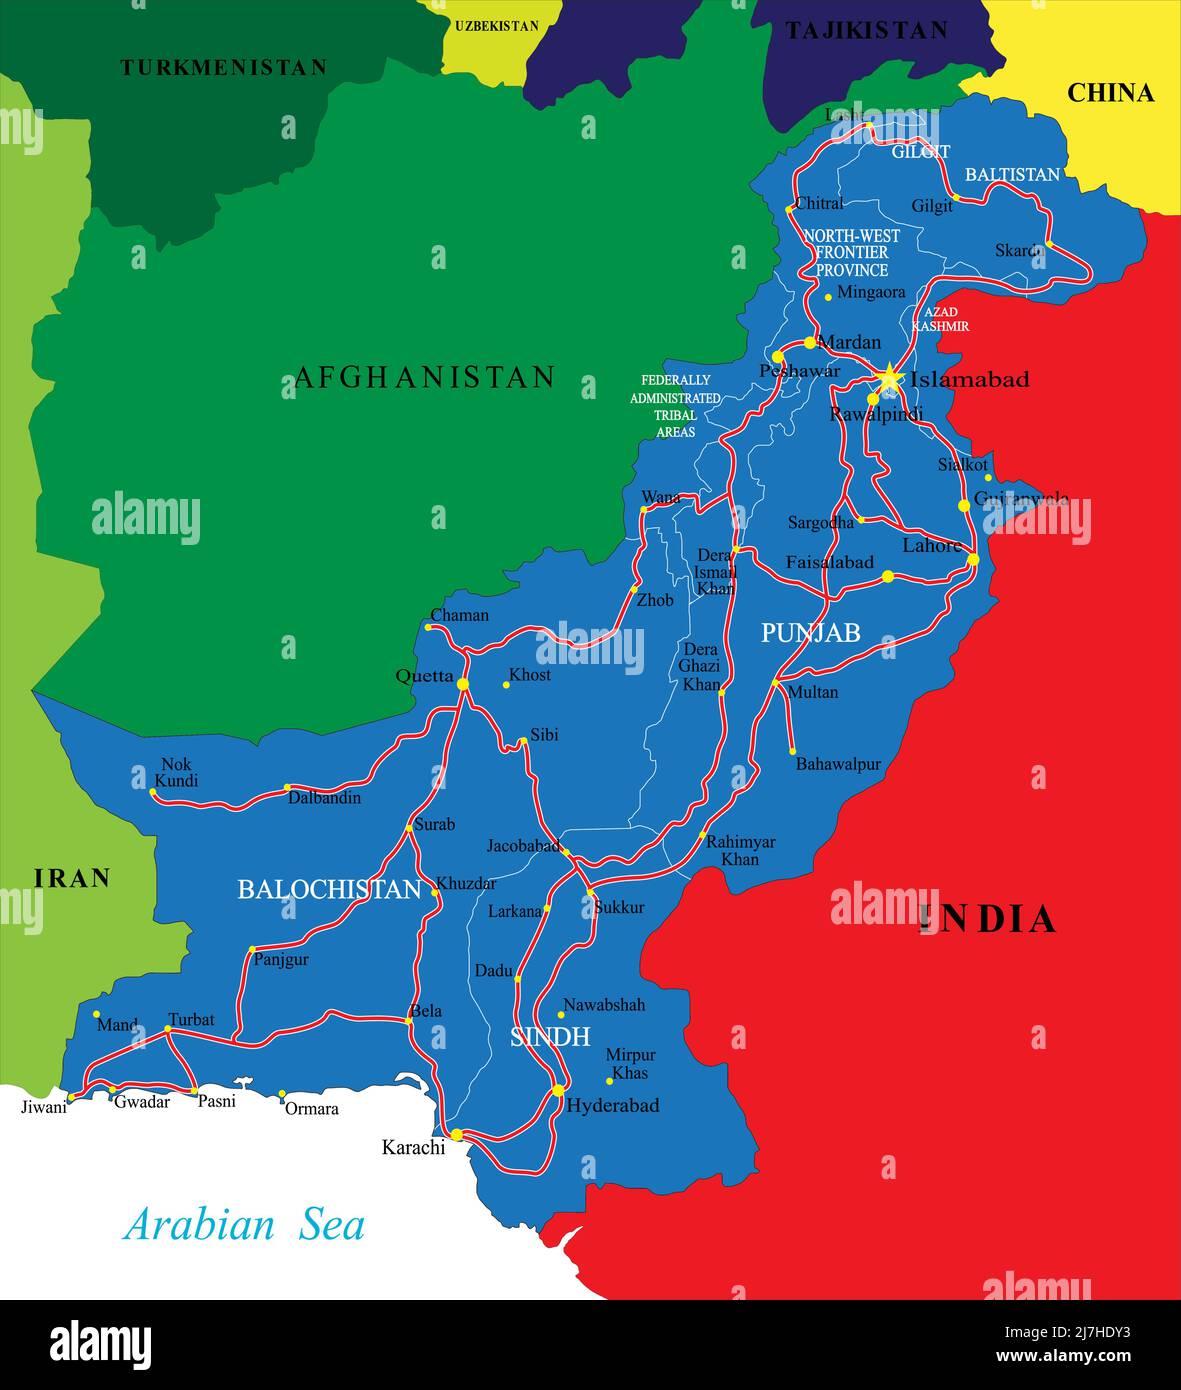 Pakistan carte vectorielle très détaillée avec les différentes régions administratives, villes et routes. Illustration de Vecteur